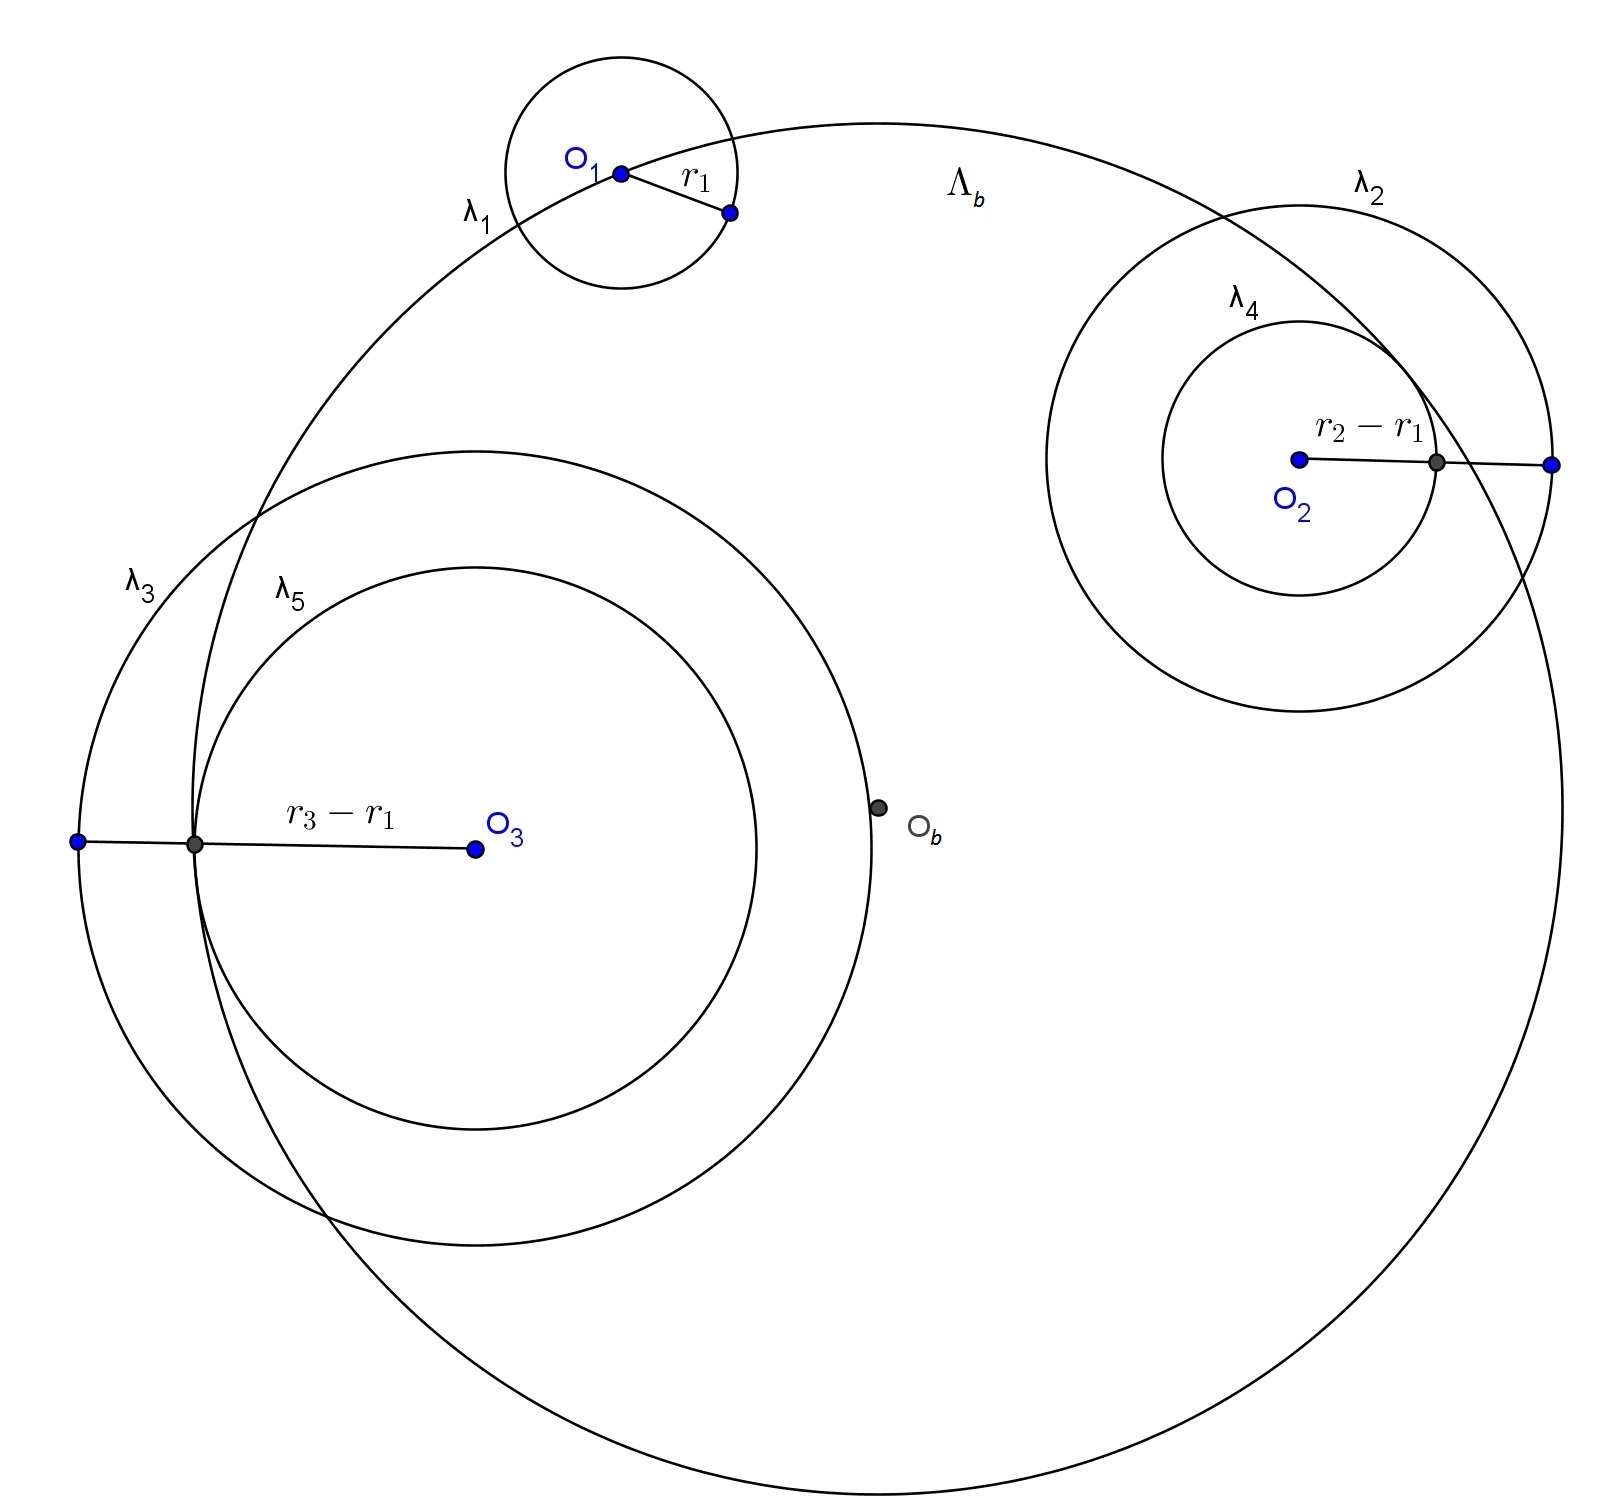 Passo 4) Construa duas circunferências: λ 6 com centro em O 2 e raio r 6 = r 2 + r 1 e λ 7 com centro em O 3 e